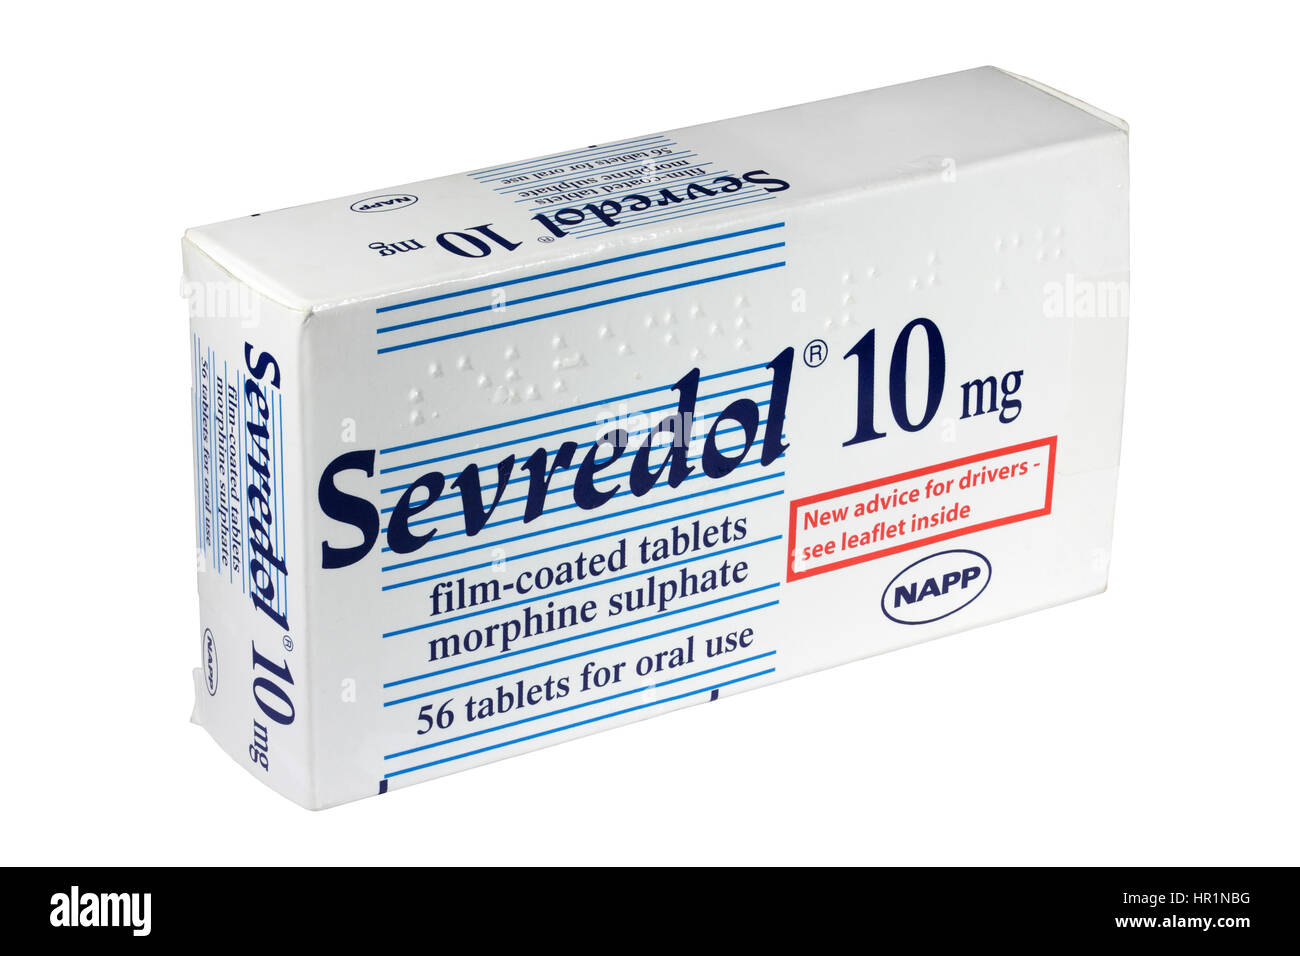 Una caja de 56 NAPP Sevredol 10mg de sulfato de morfina comprimidos con cubierta pelicular aislado en un fondo blanco analgésicos opioides de prescripción de medicamentos del Reino Unido Foto de stock